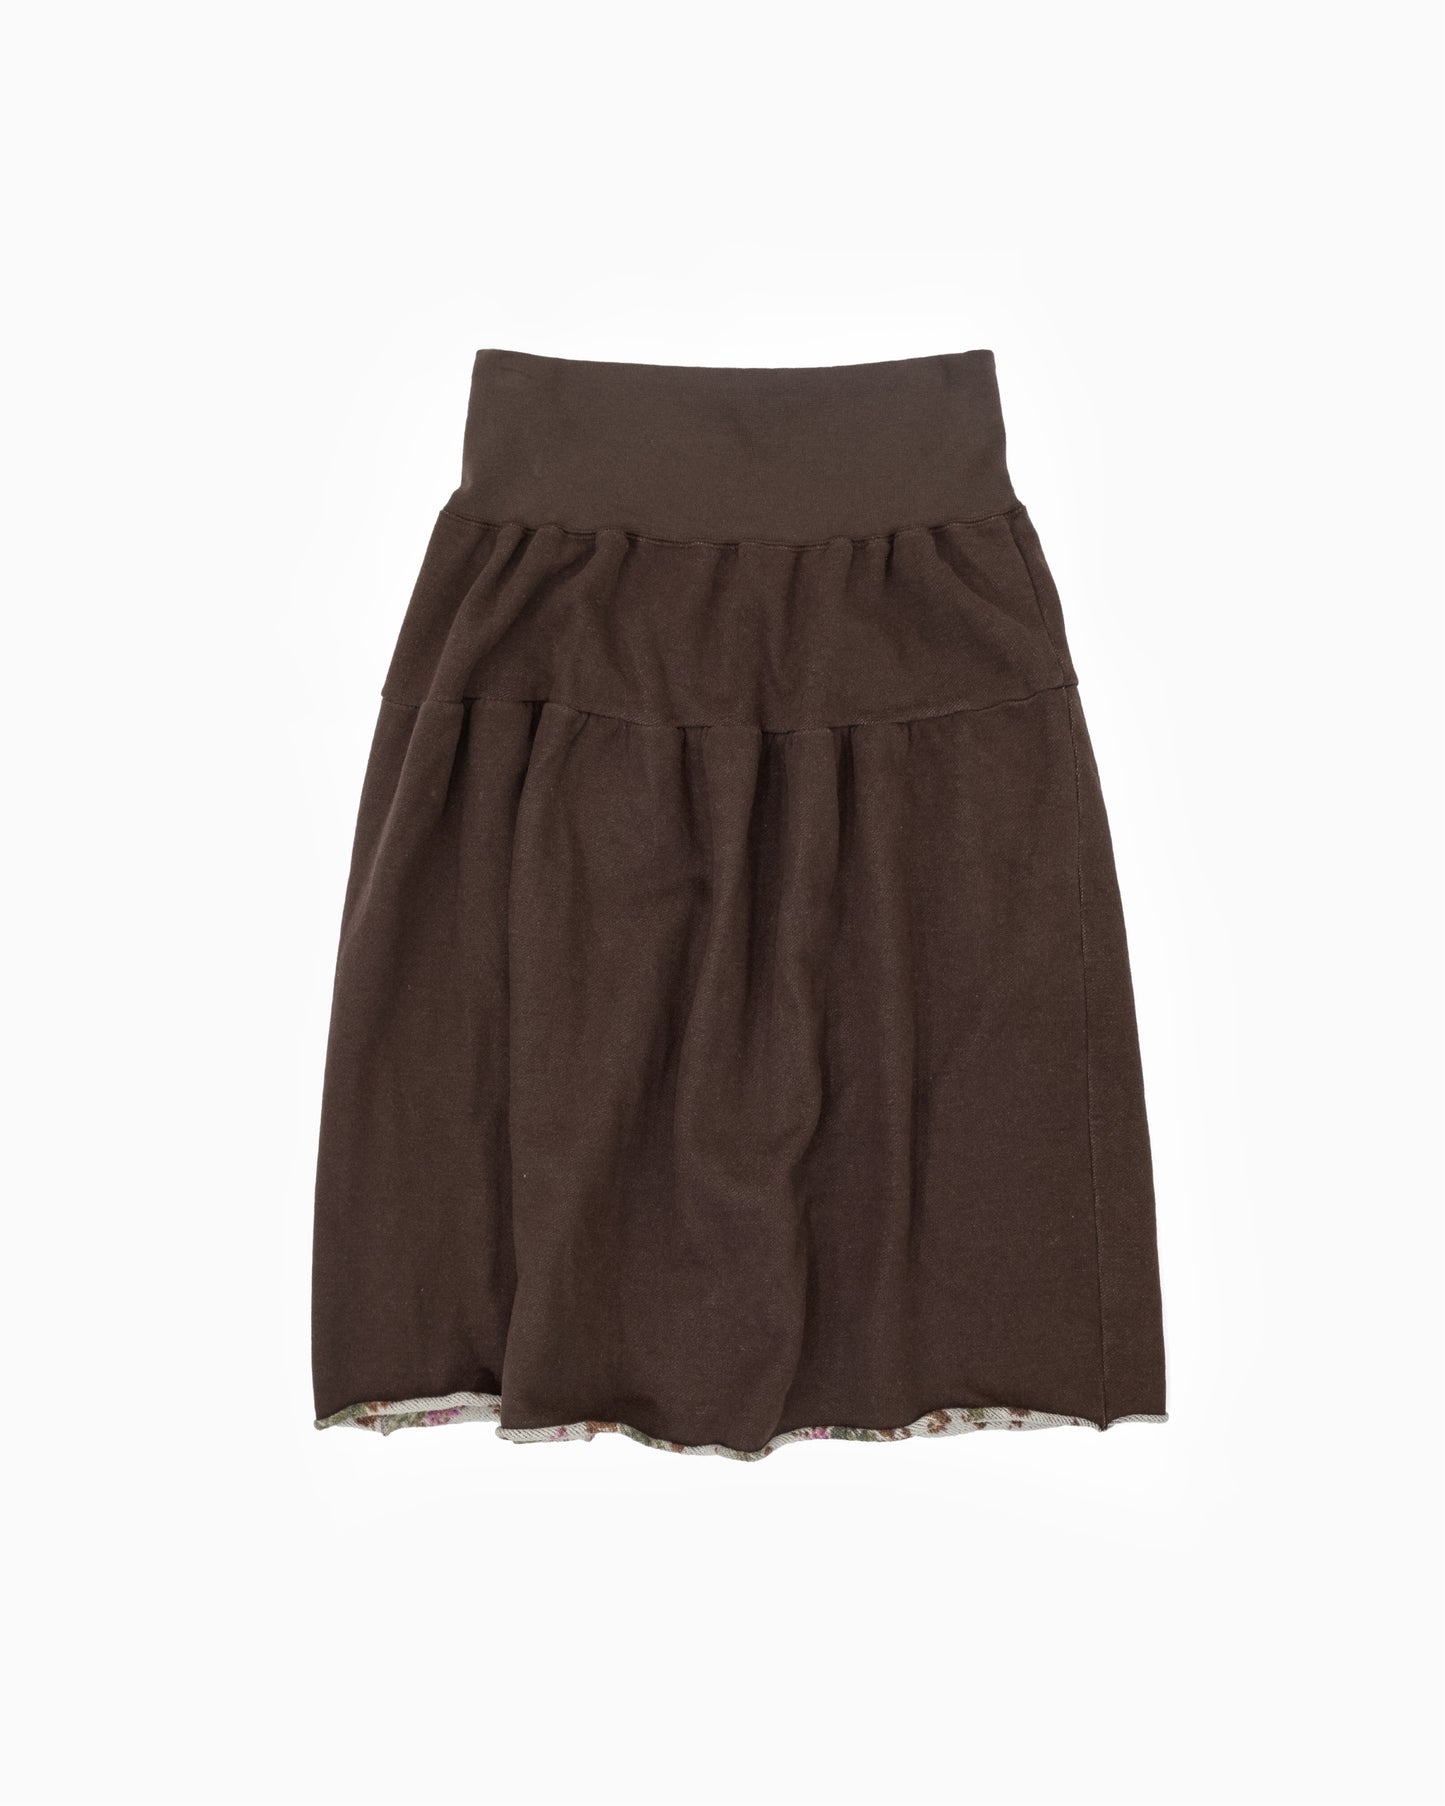 I.S. Sunao Kuwahara Reversible Skirt with Waistband